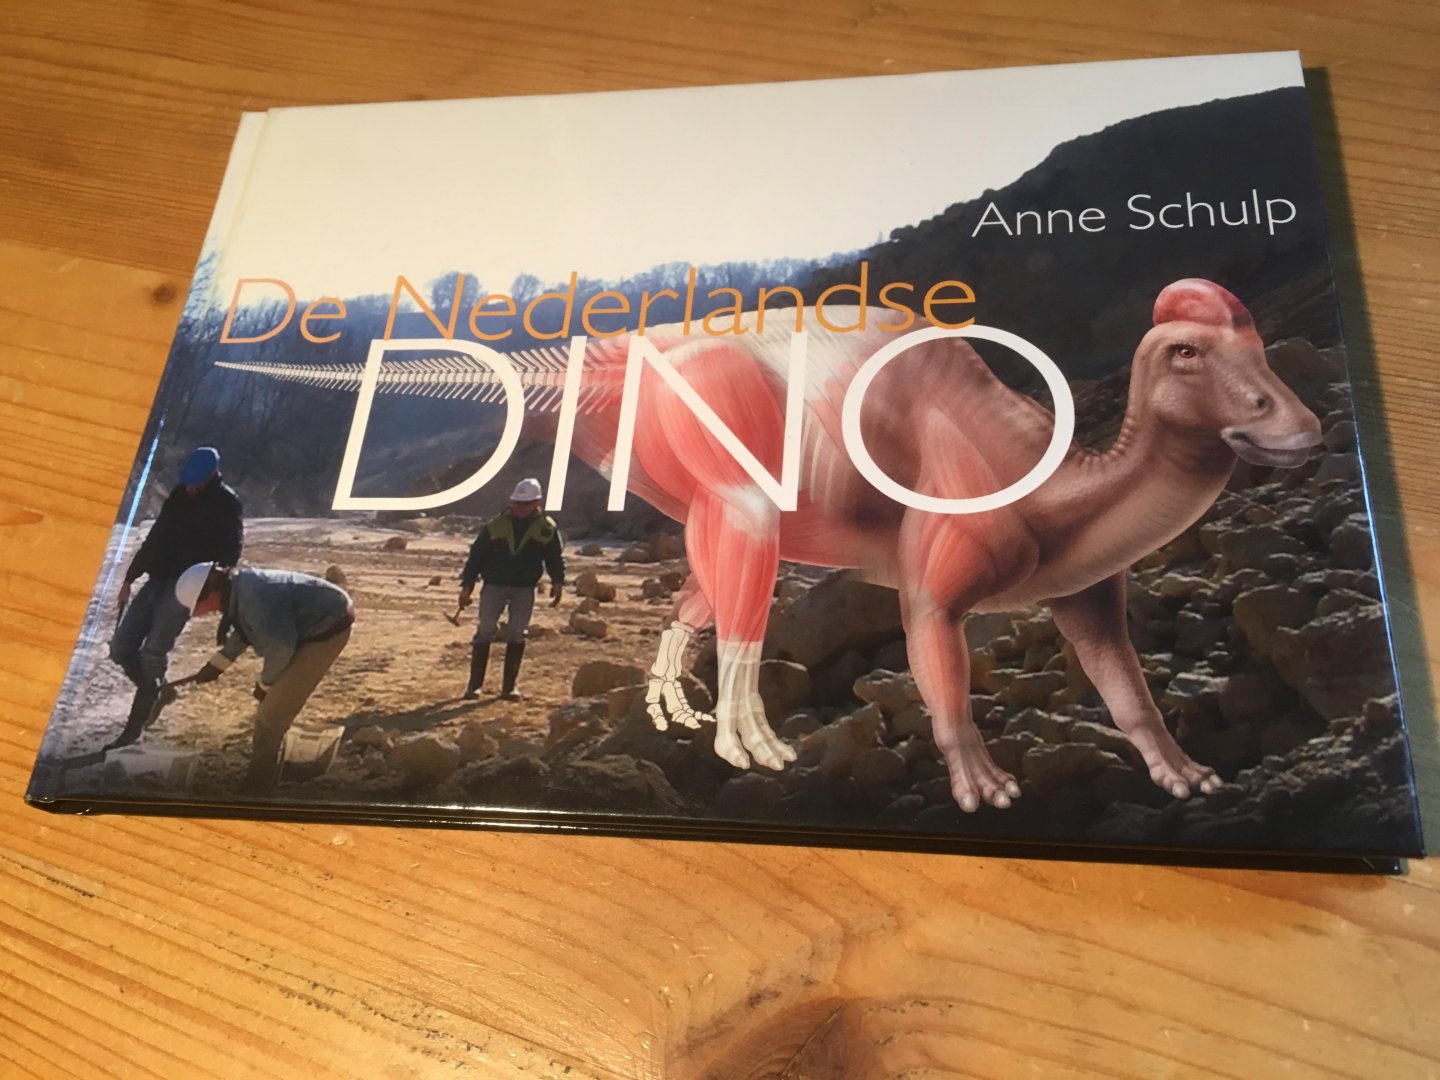 Schulp, Anne - De Nederlandse Dino